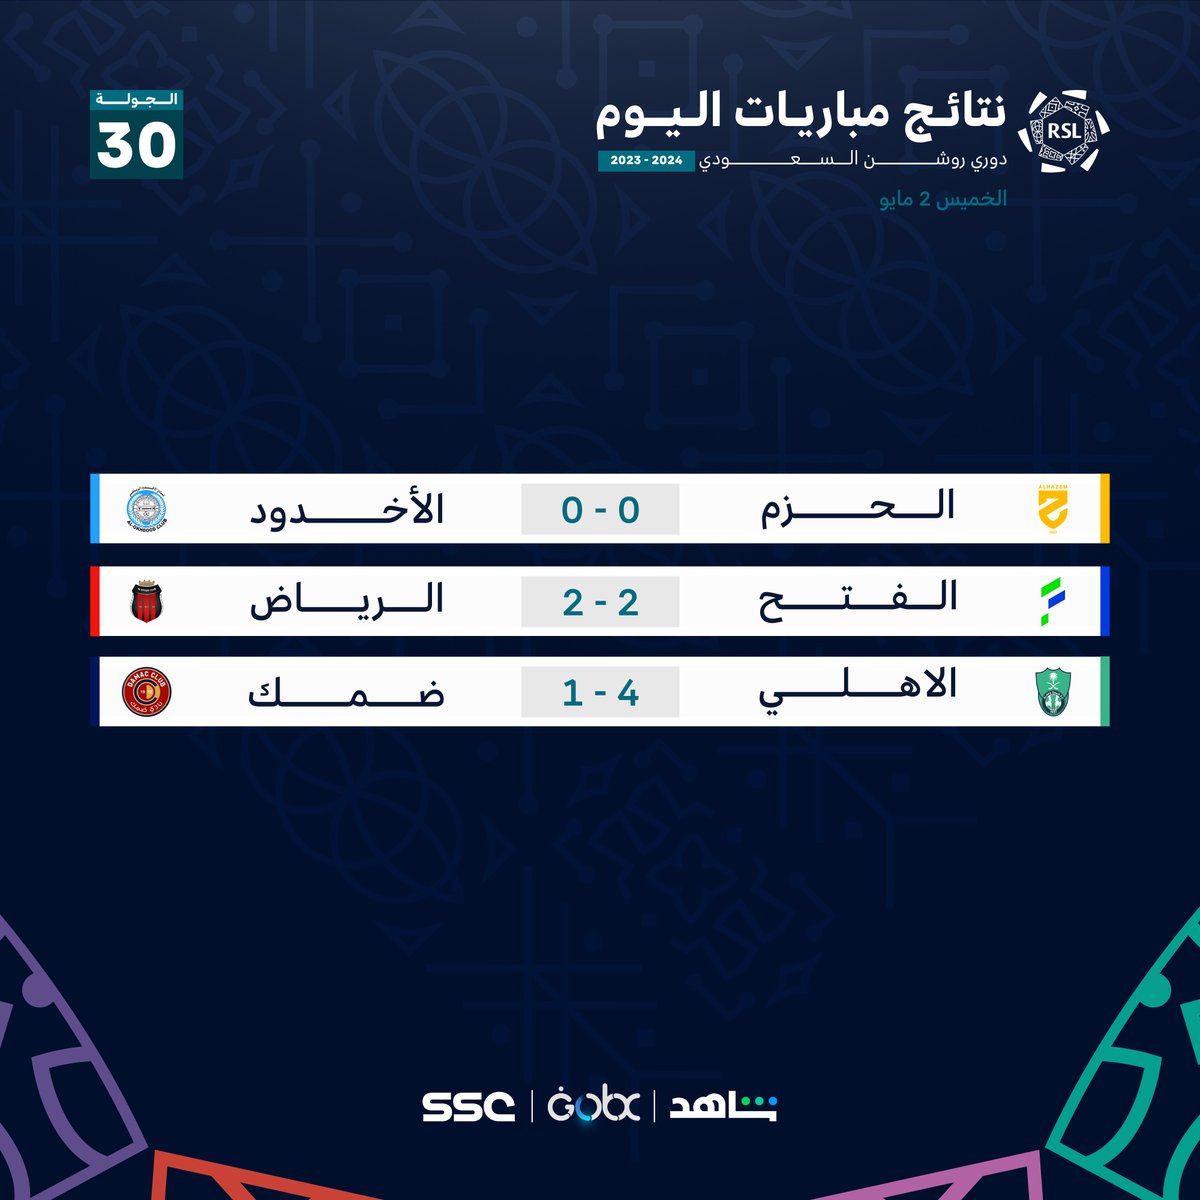 نتائج مباريات اليوم⚽⤵

#دوري_روشن_السعودي⁩ | #SSC